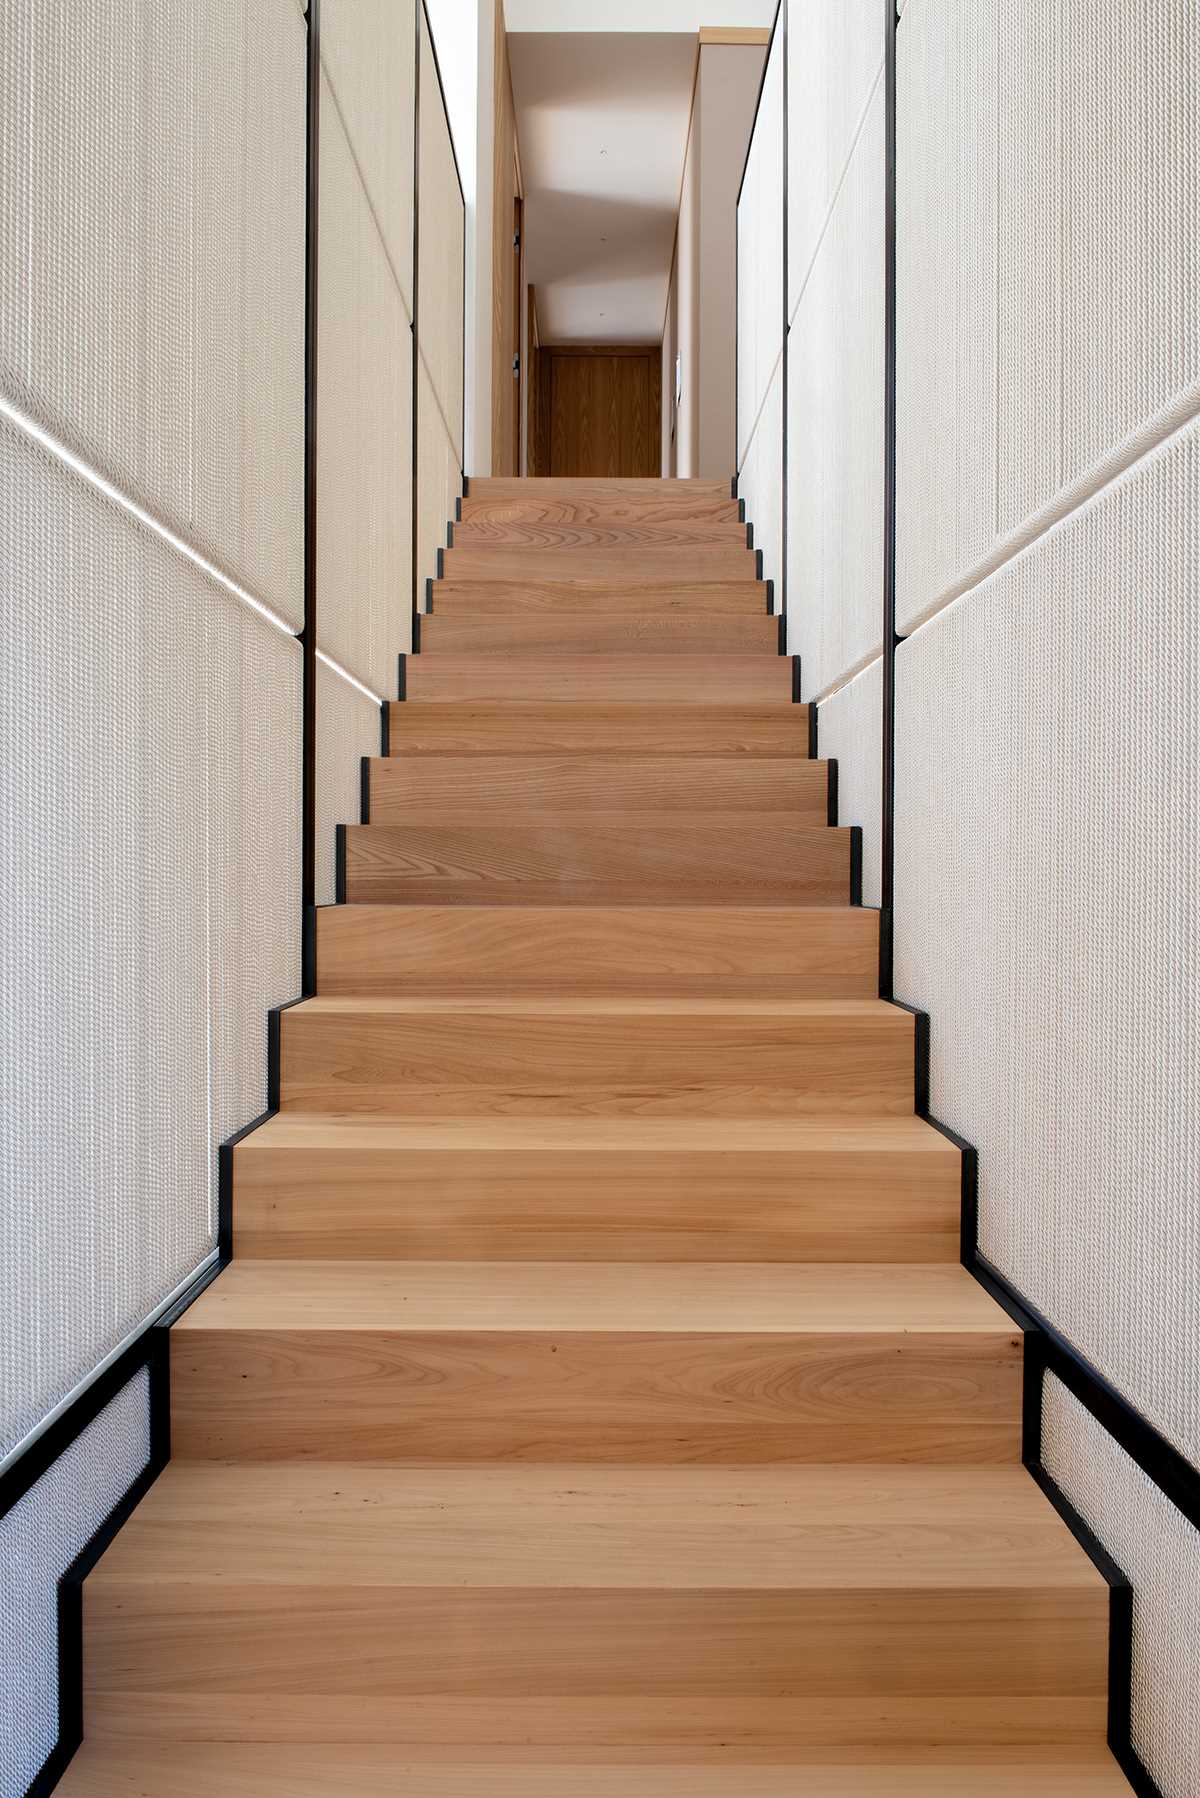 پله های چوبی مدرن به راهرویی با دیواری از کابینت های چوبی منتهی می شوند.